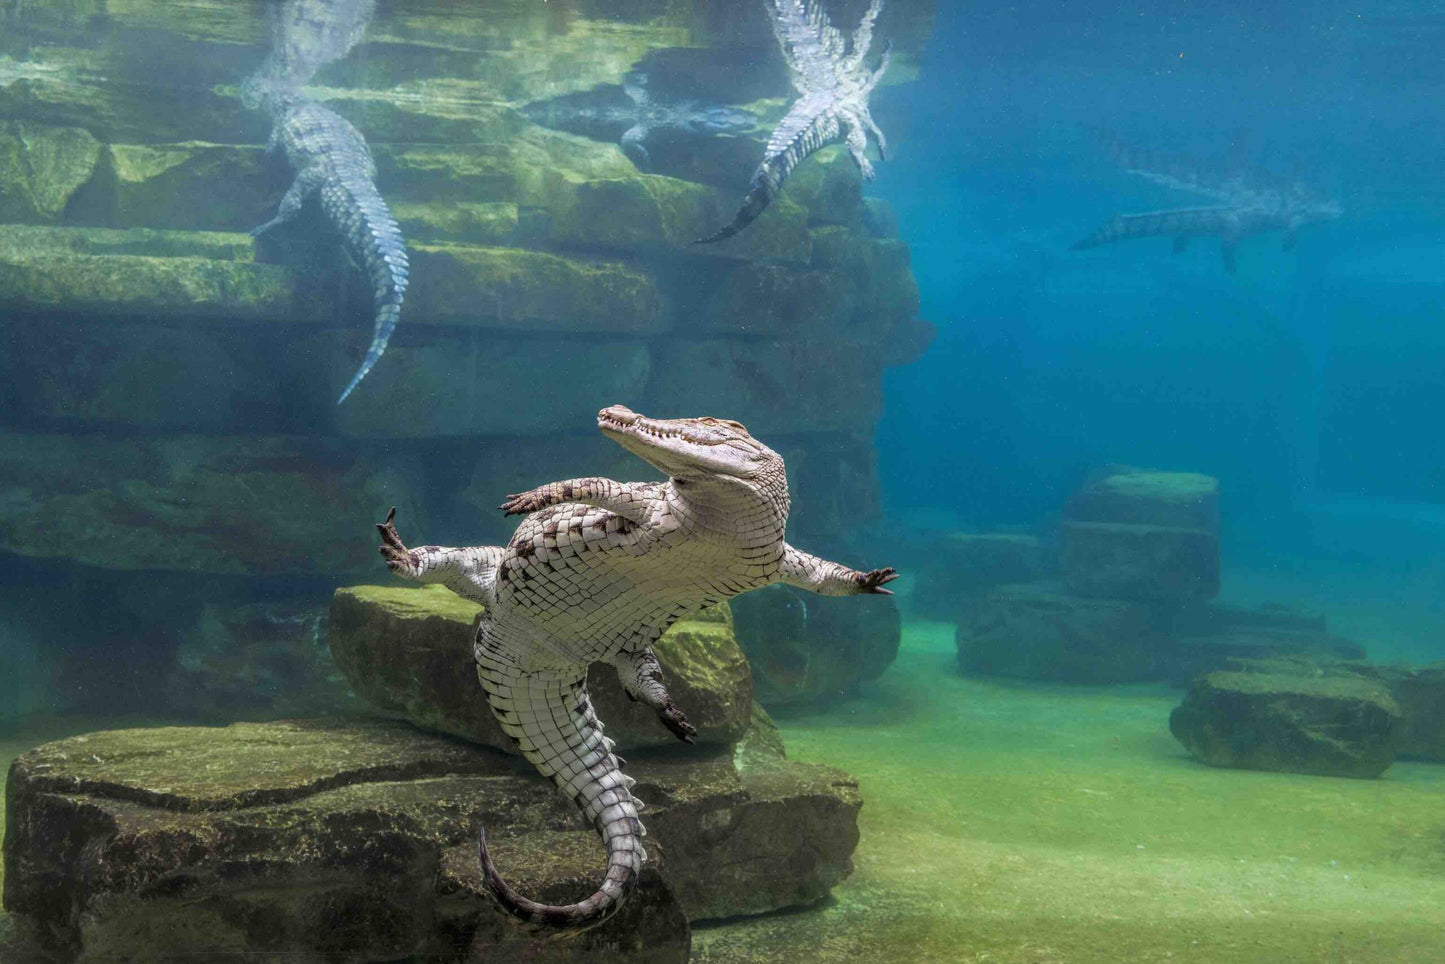 Dubai Crocodile Park Entry Ticket